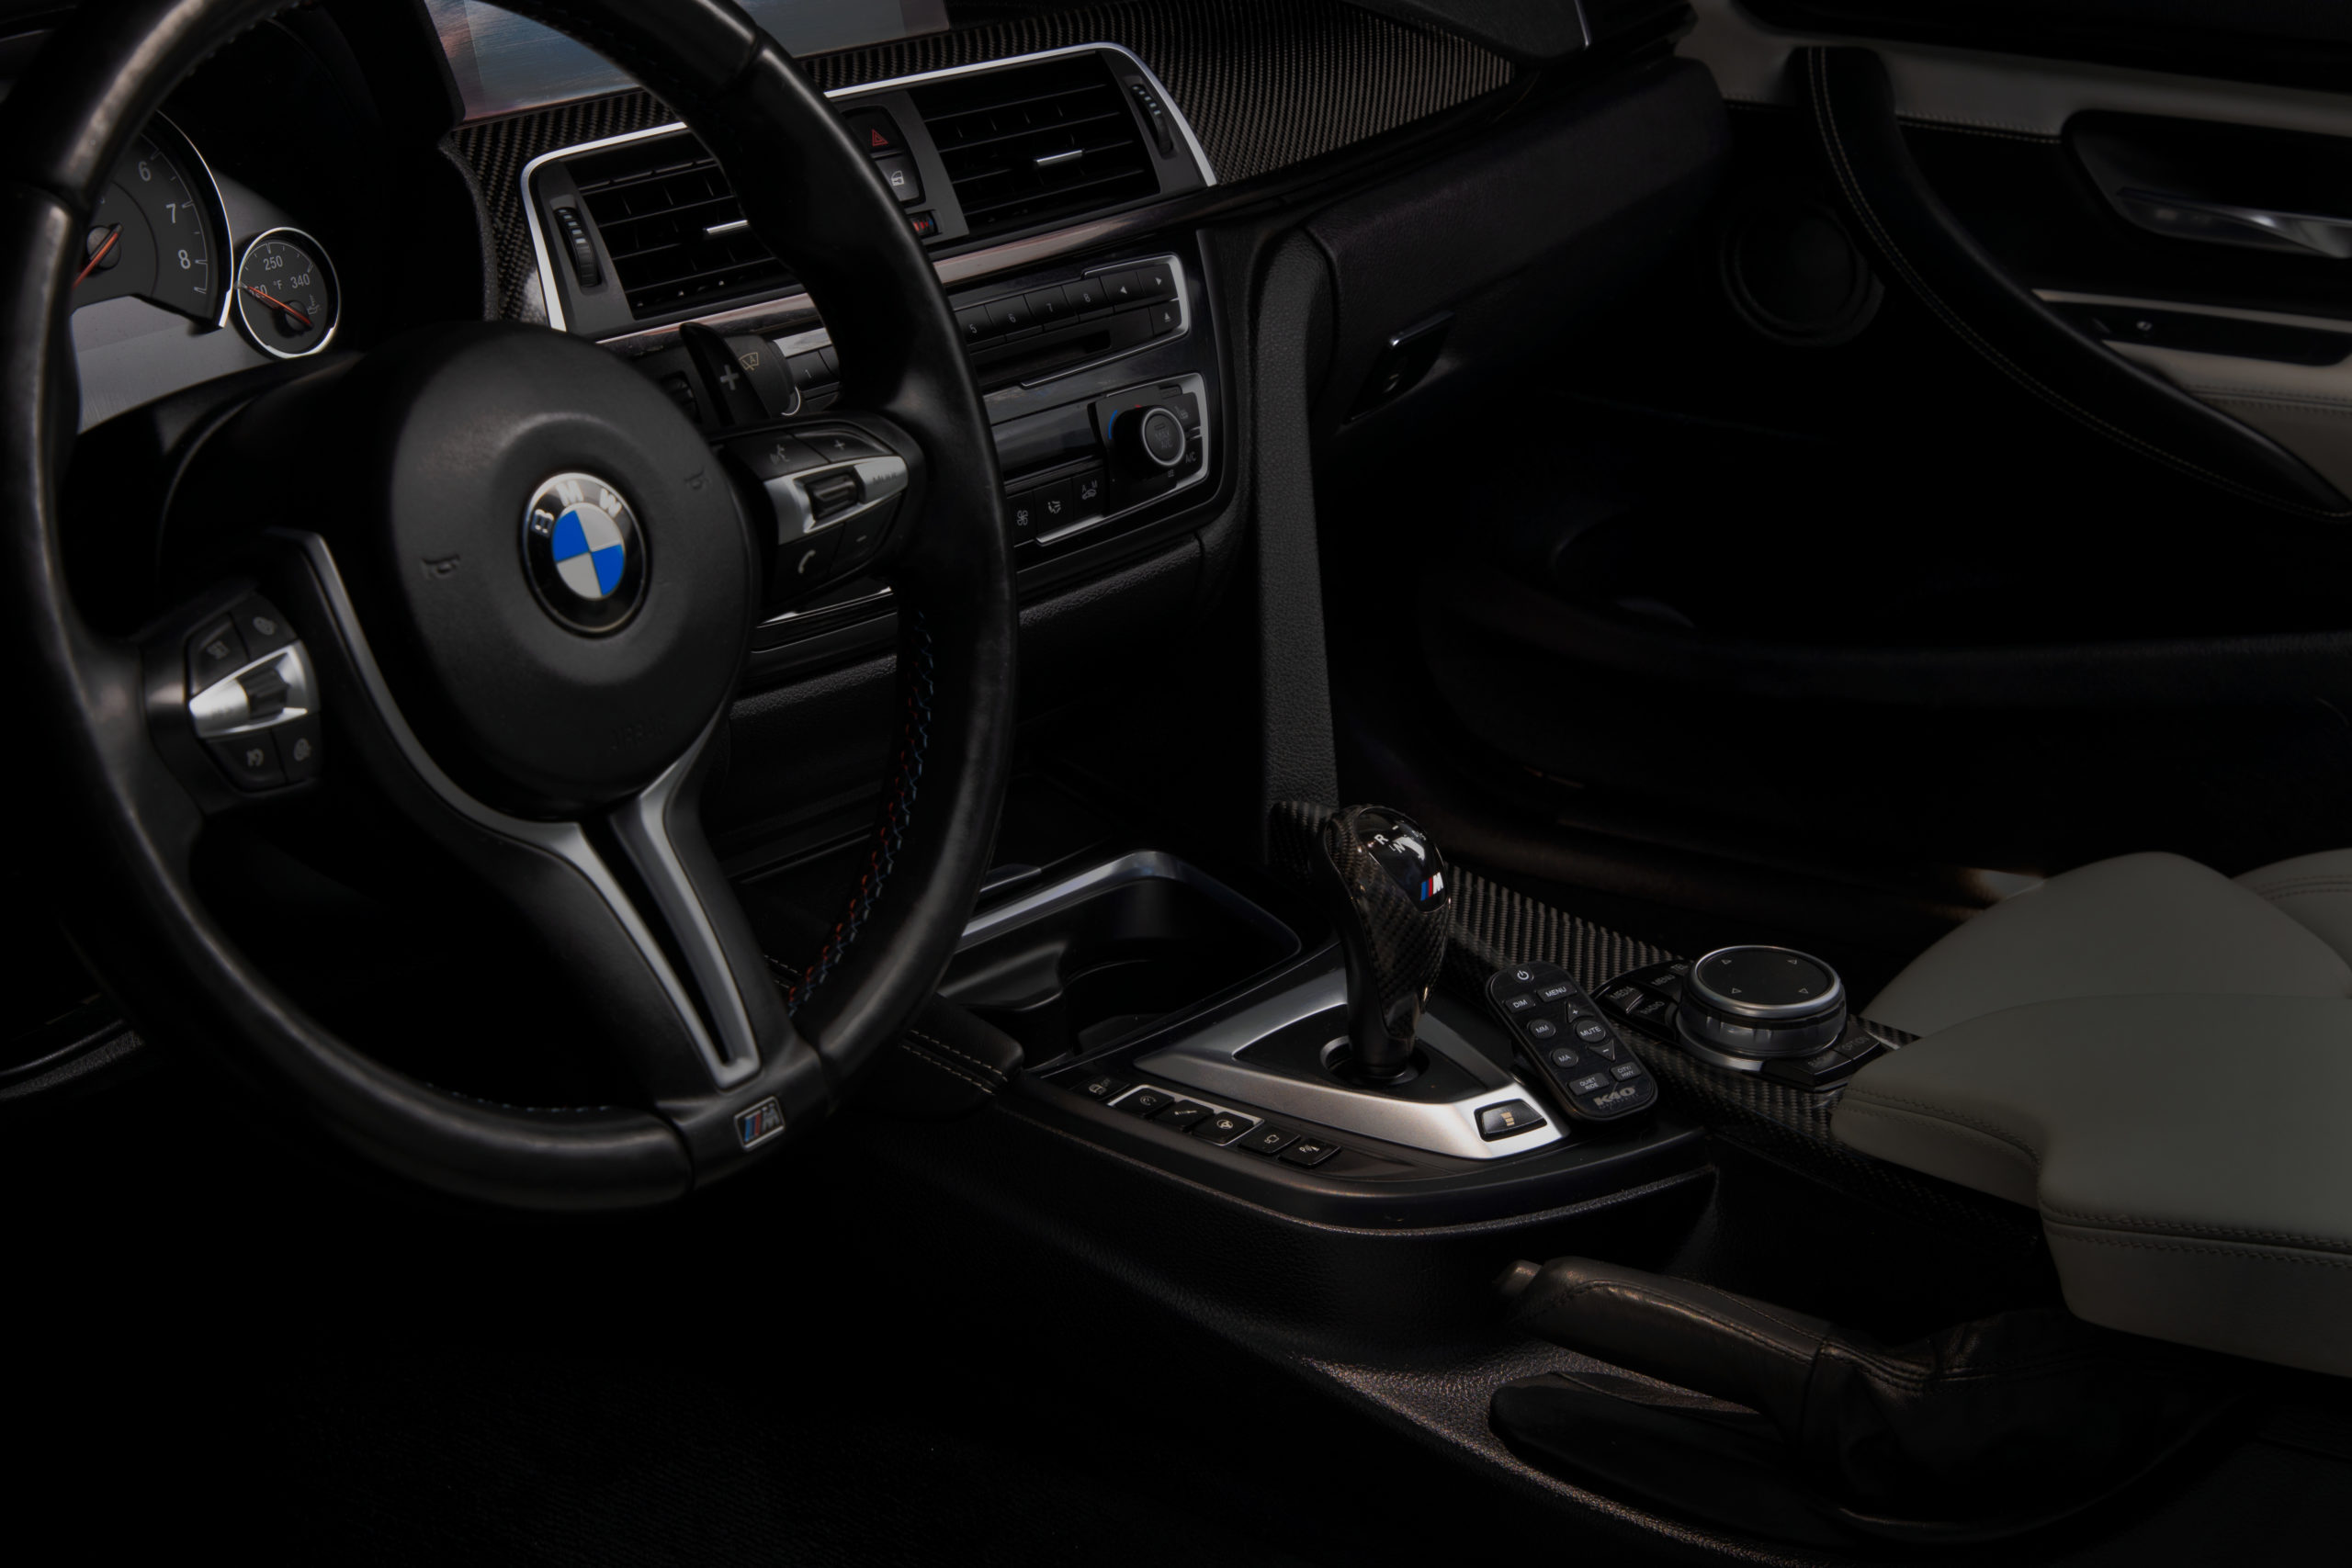 K40 Platinum360 remote installed next to gear shift in BMW SUV